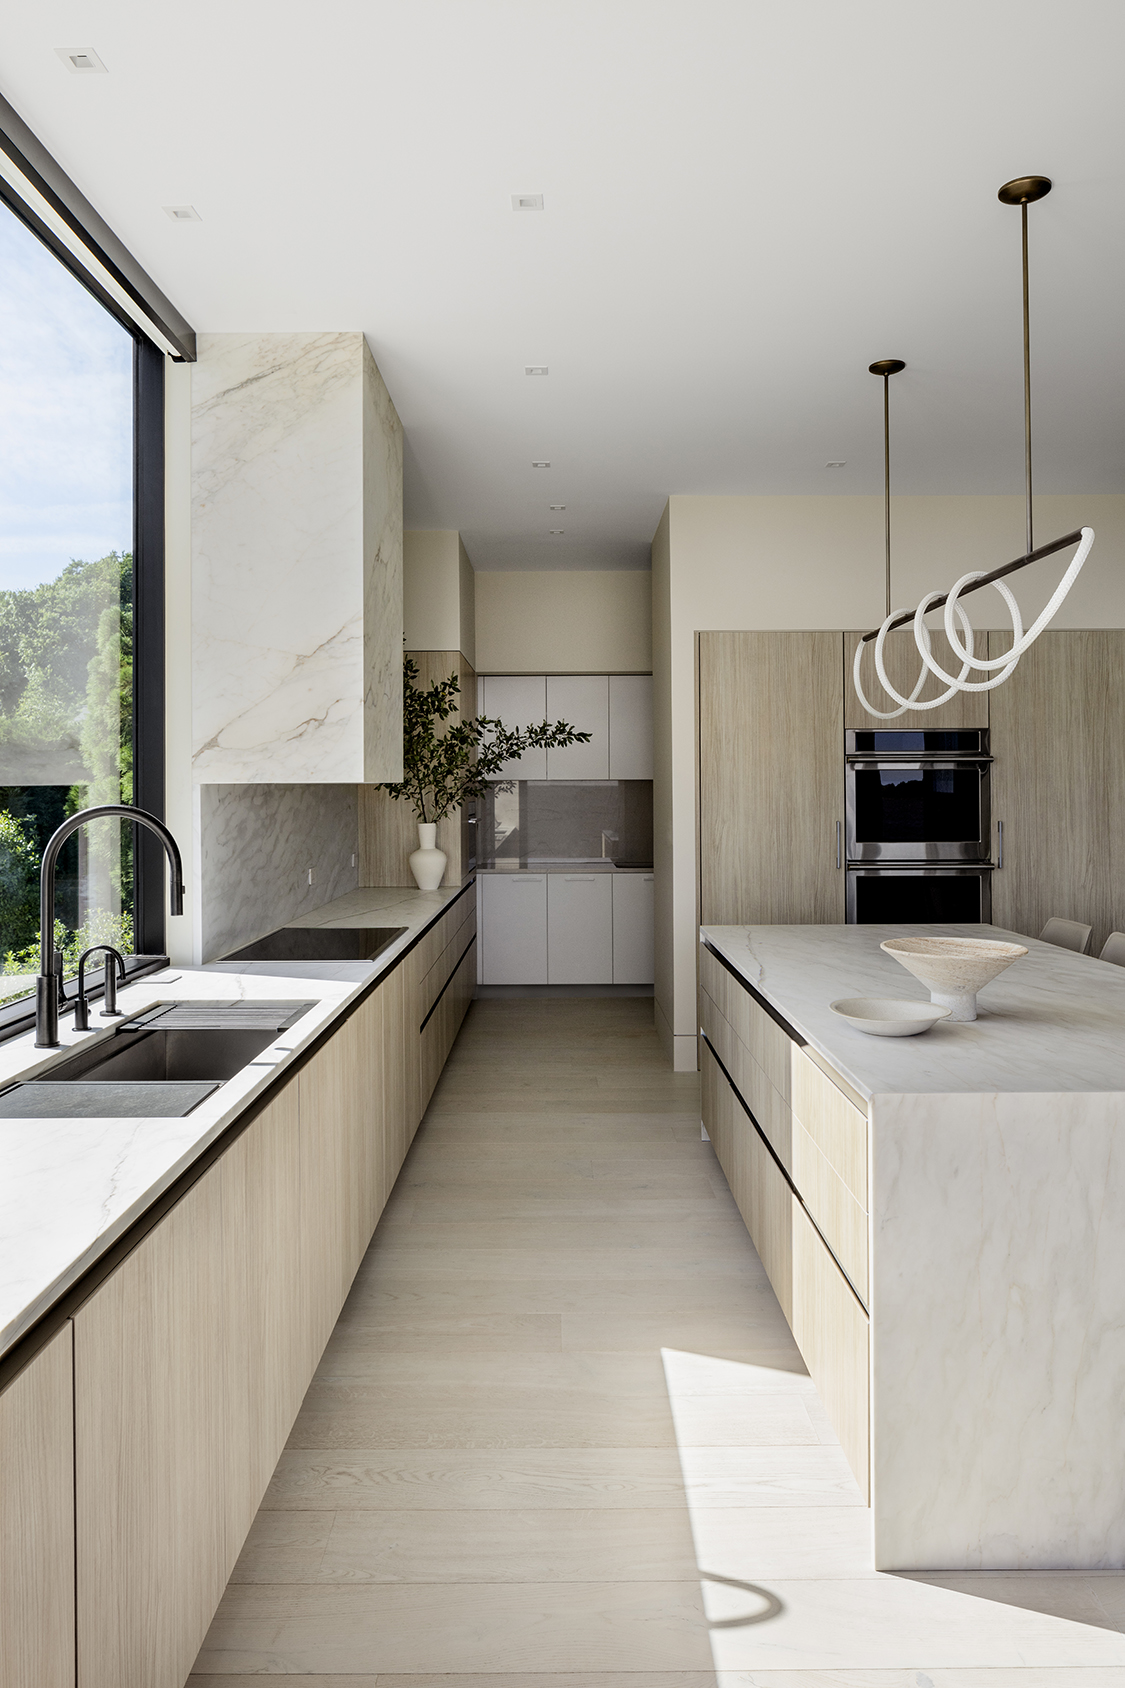 Konst Siematic Luxury Kitchen Design